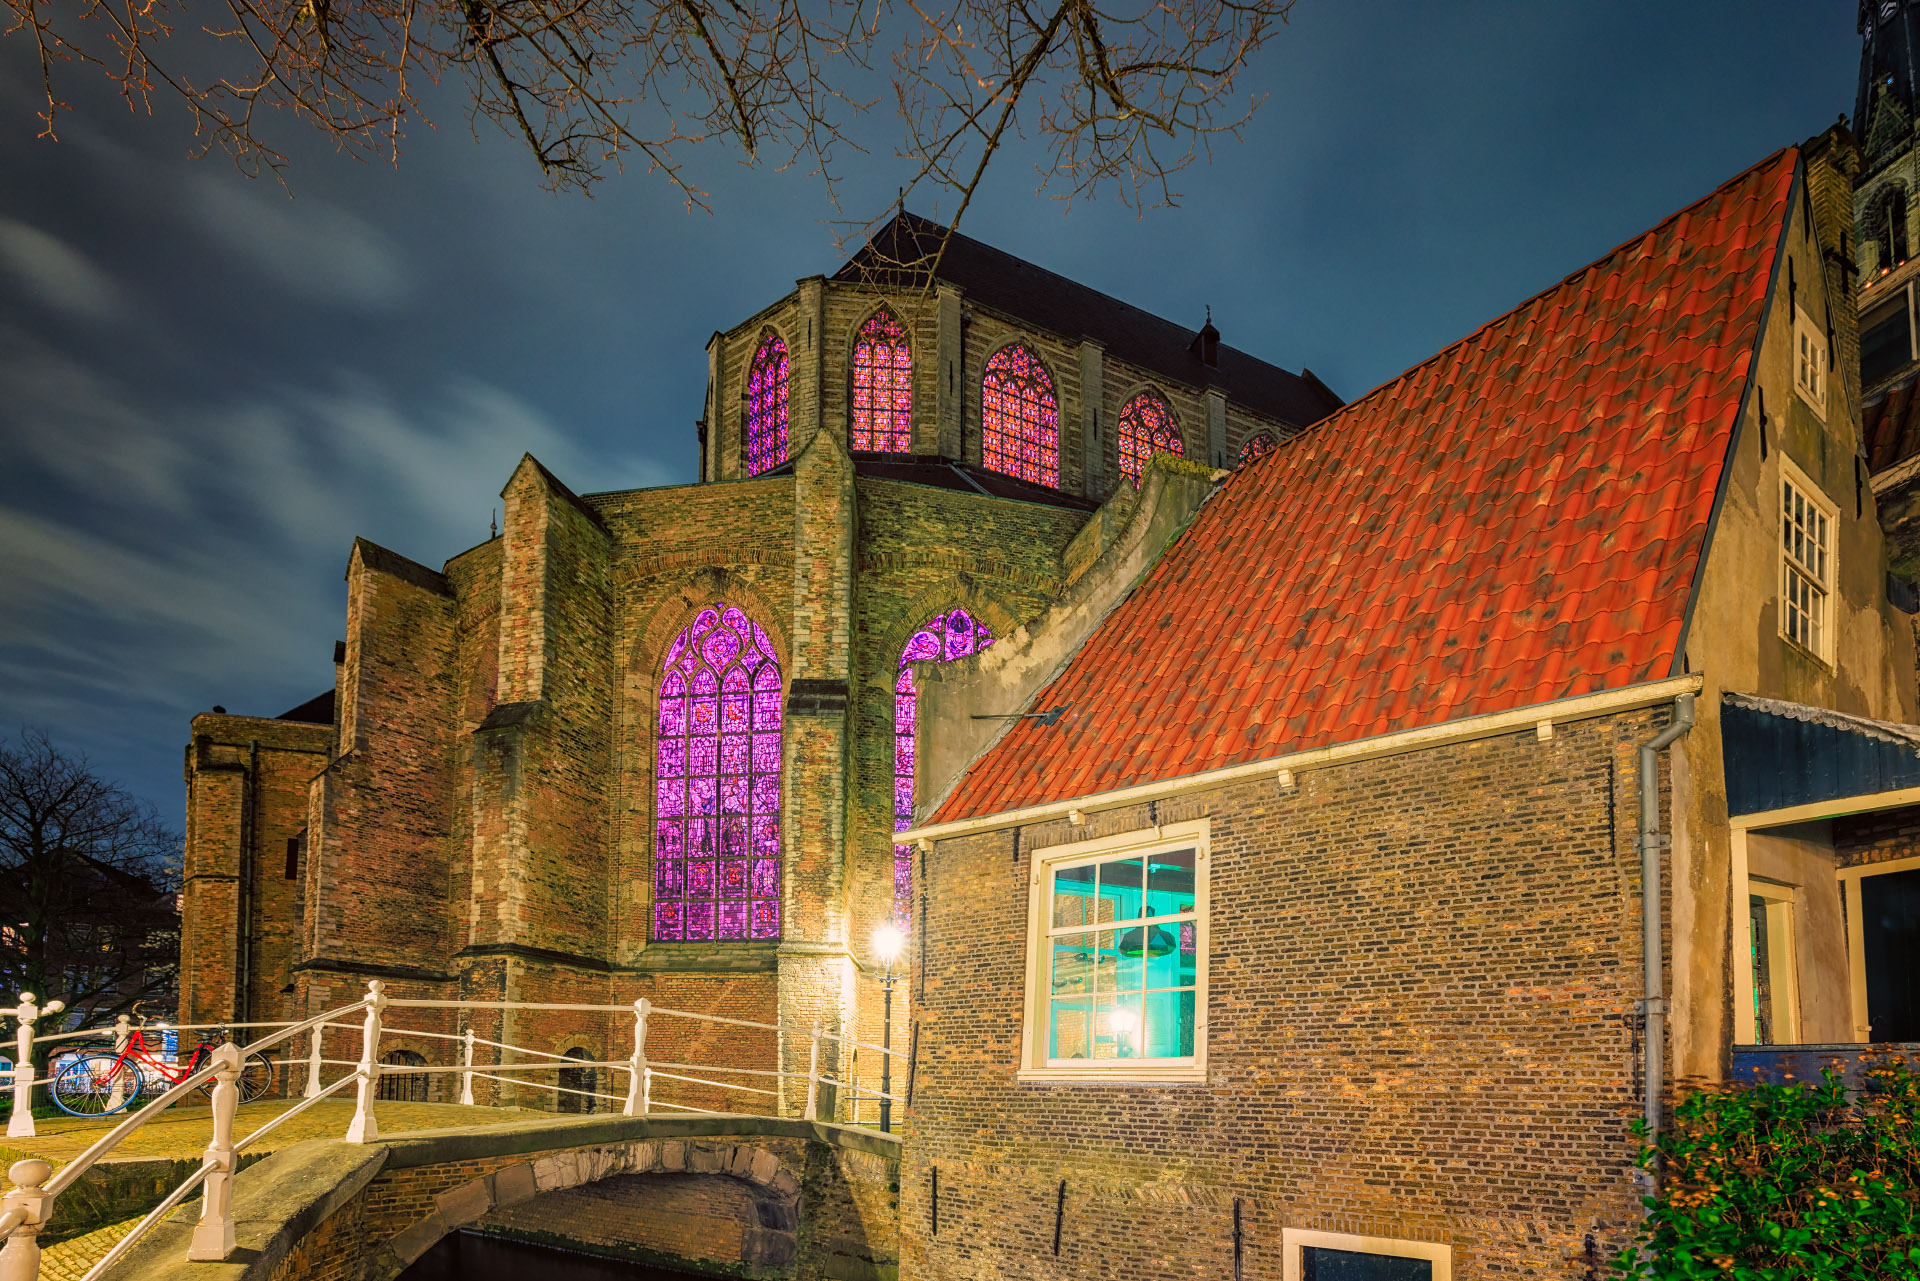 De Nieuwe Kerk in de stad Delft, in de Nederlandse provincie Zuid-Holland, is een kerkgebouw aan de Markt in het centrum van de stad. De toren is met 108,75 meter na de Domtoren in Utrecht de hoogste kerktoren van Nederland. De kerk is verder bekend vanwege het Praalgraf van Willem van Oranje. Onder het praalgraf bevindt zich de grafkelder van Oranje-Nassau, de grafkelder van het Koninklijk Huis.